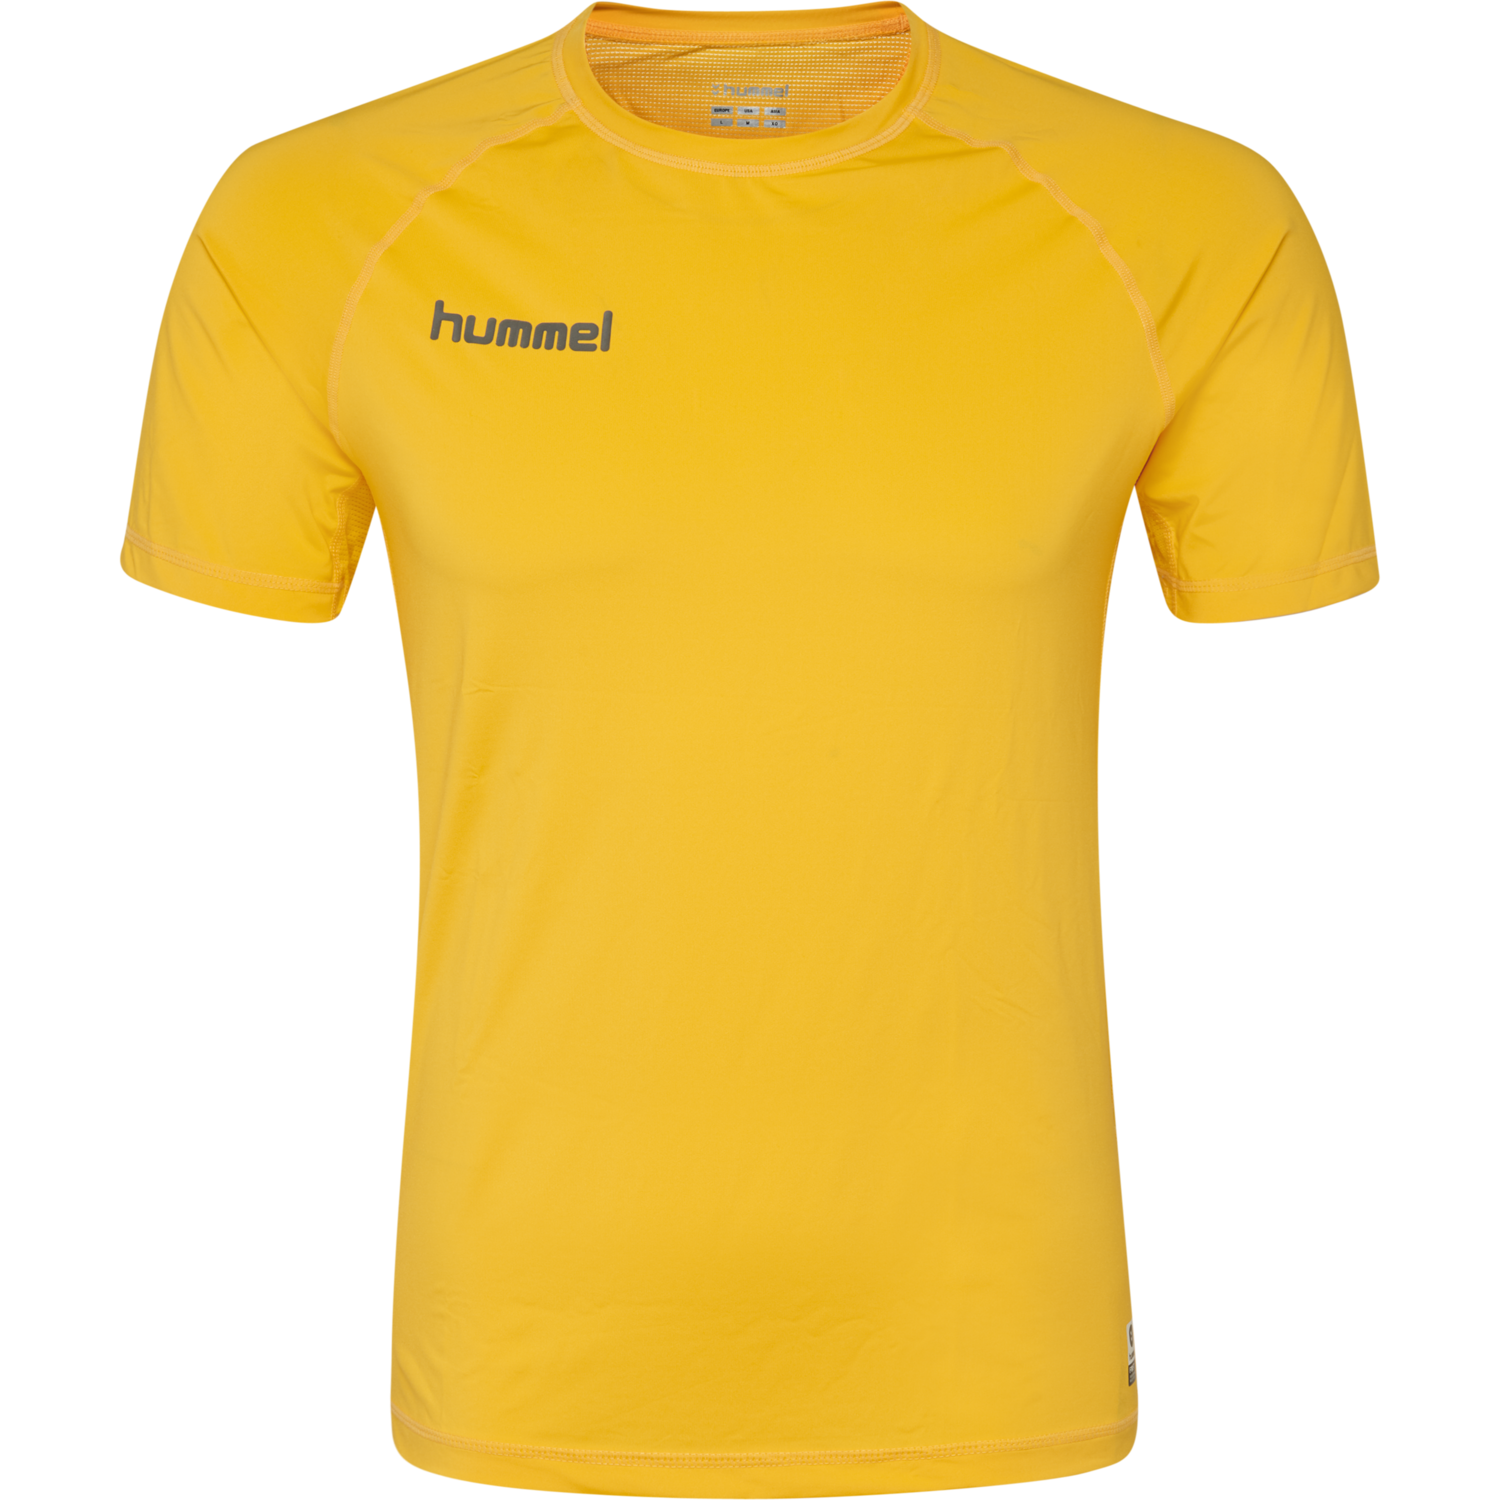 HUMMEL FIRST PERF SS JERSEY S-XXL NEU 30€ shirt funktionsshirt kompressionsshirt 